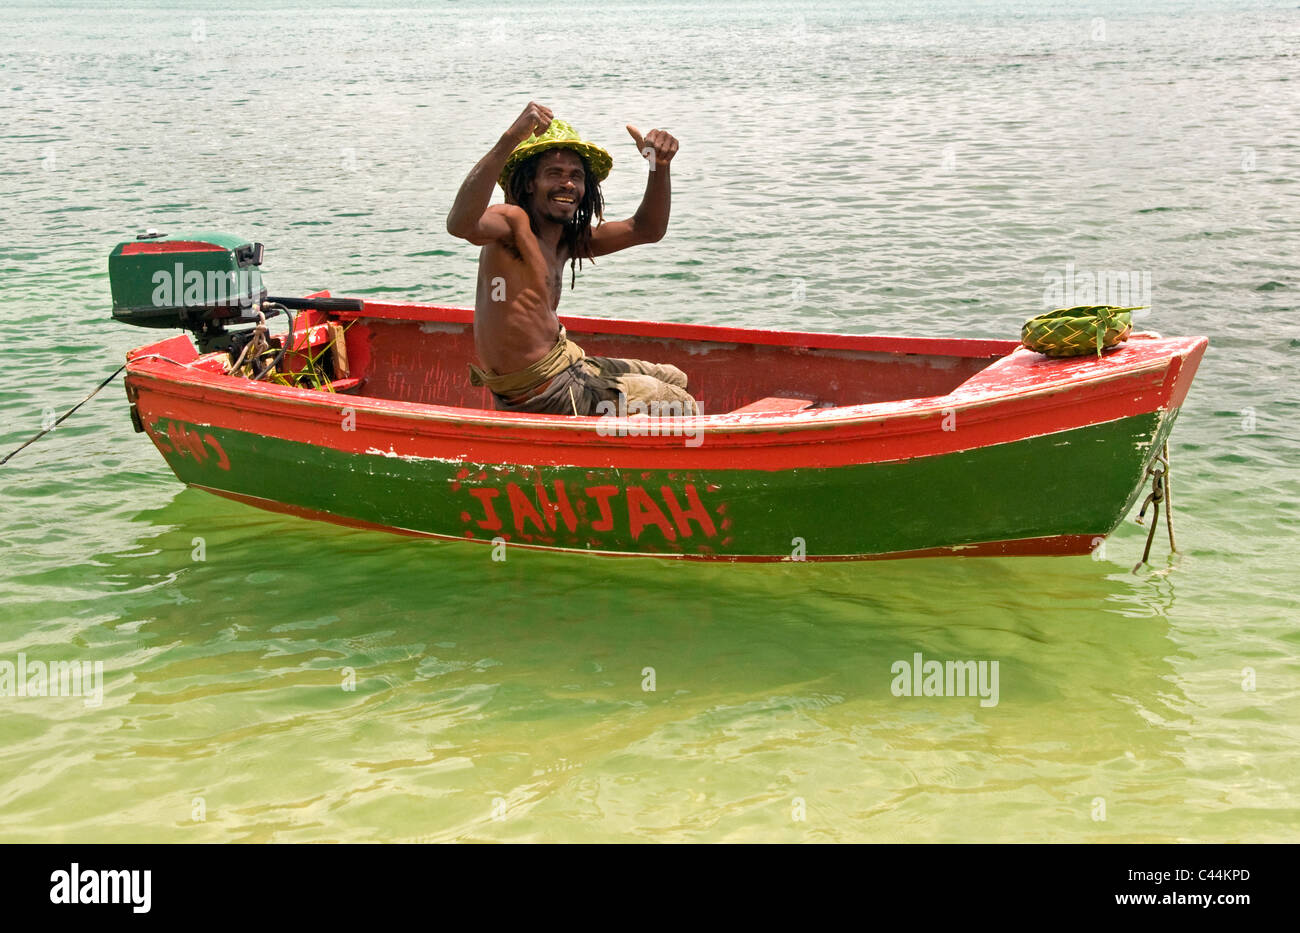 San Luciano uomo locale con Palm Frond prodotti in rosso barca con il pollice in alto, St Lucia, il Mare dei Caraibi, West Indies Foto Stock